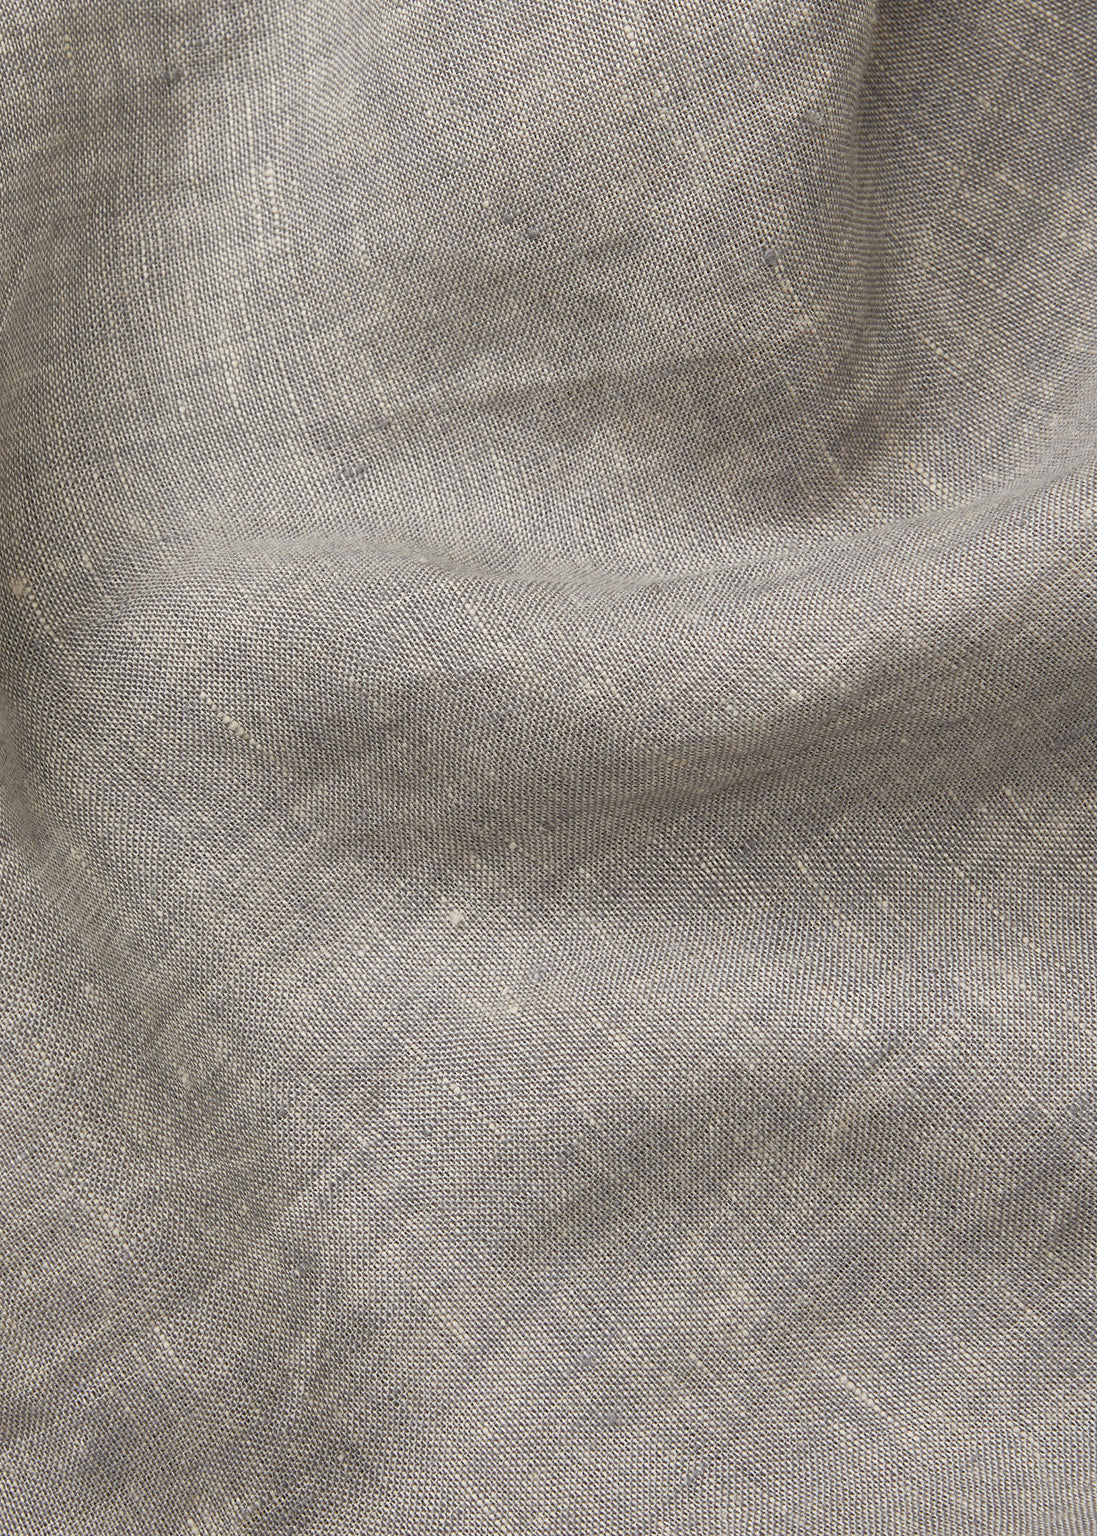 Bea skirt linen | Grey